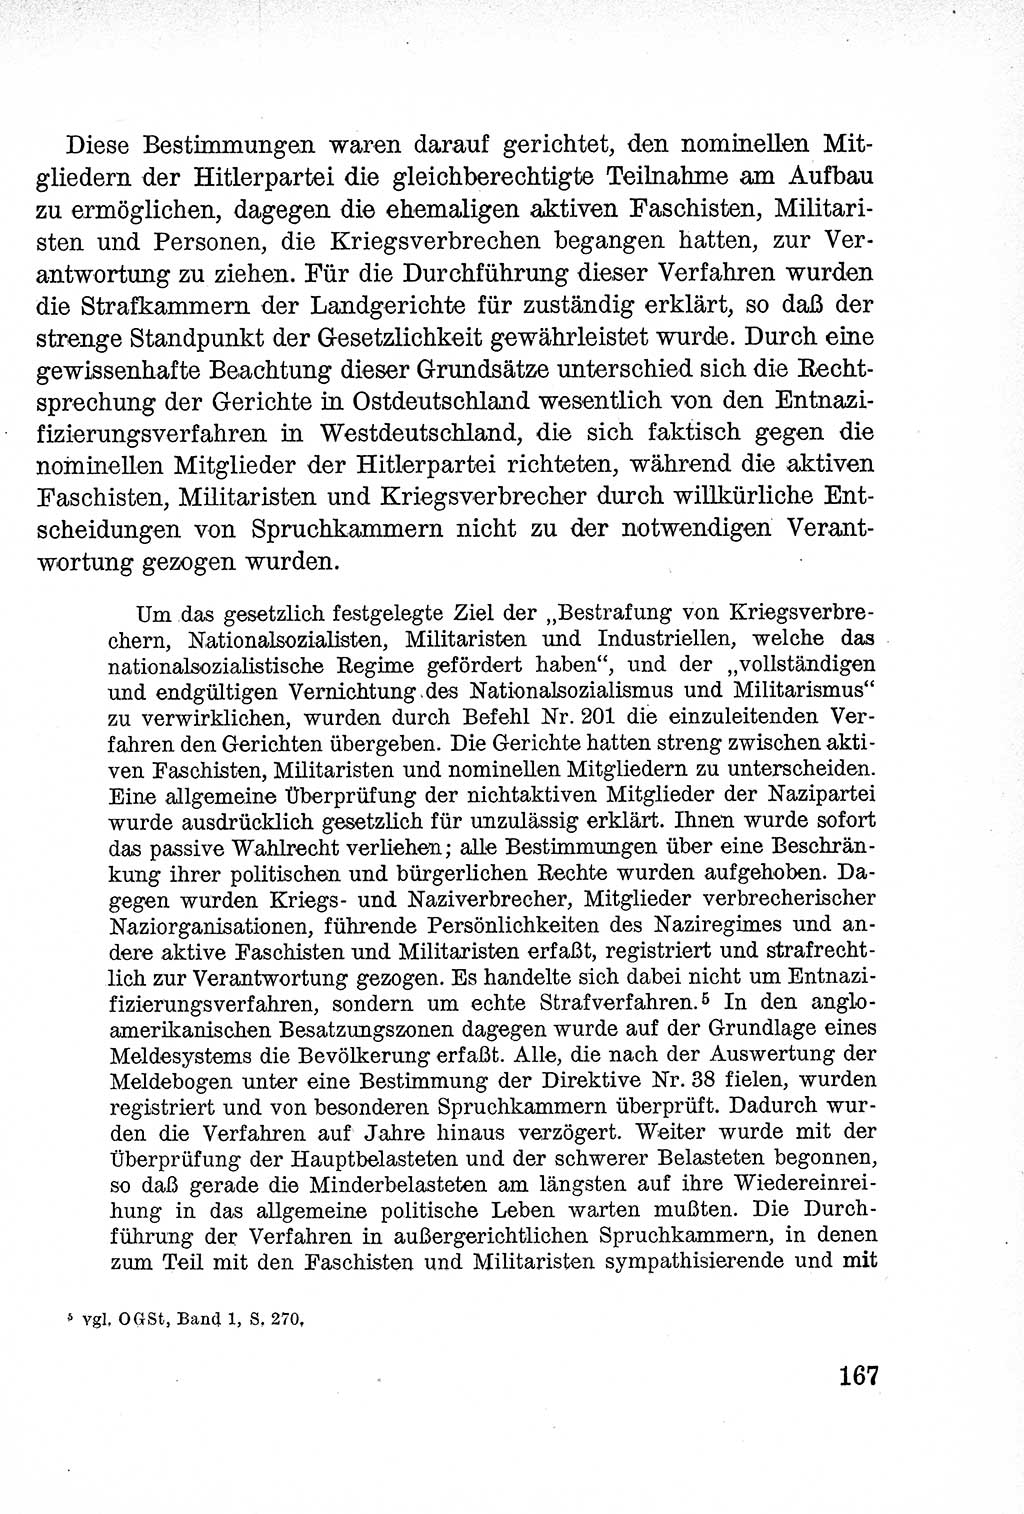 Lehrbuch des Strafrechts der Deutschen Demokratischen Republik (DDR), Allgemeiner Teil 1957, Seite 167 (Lb. Strafr. DDR AT 1957, S. 167)